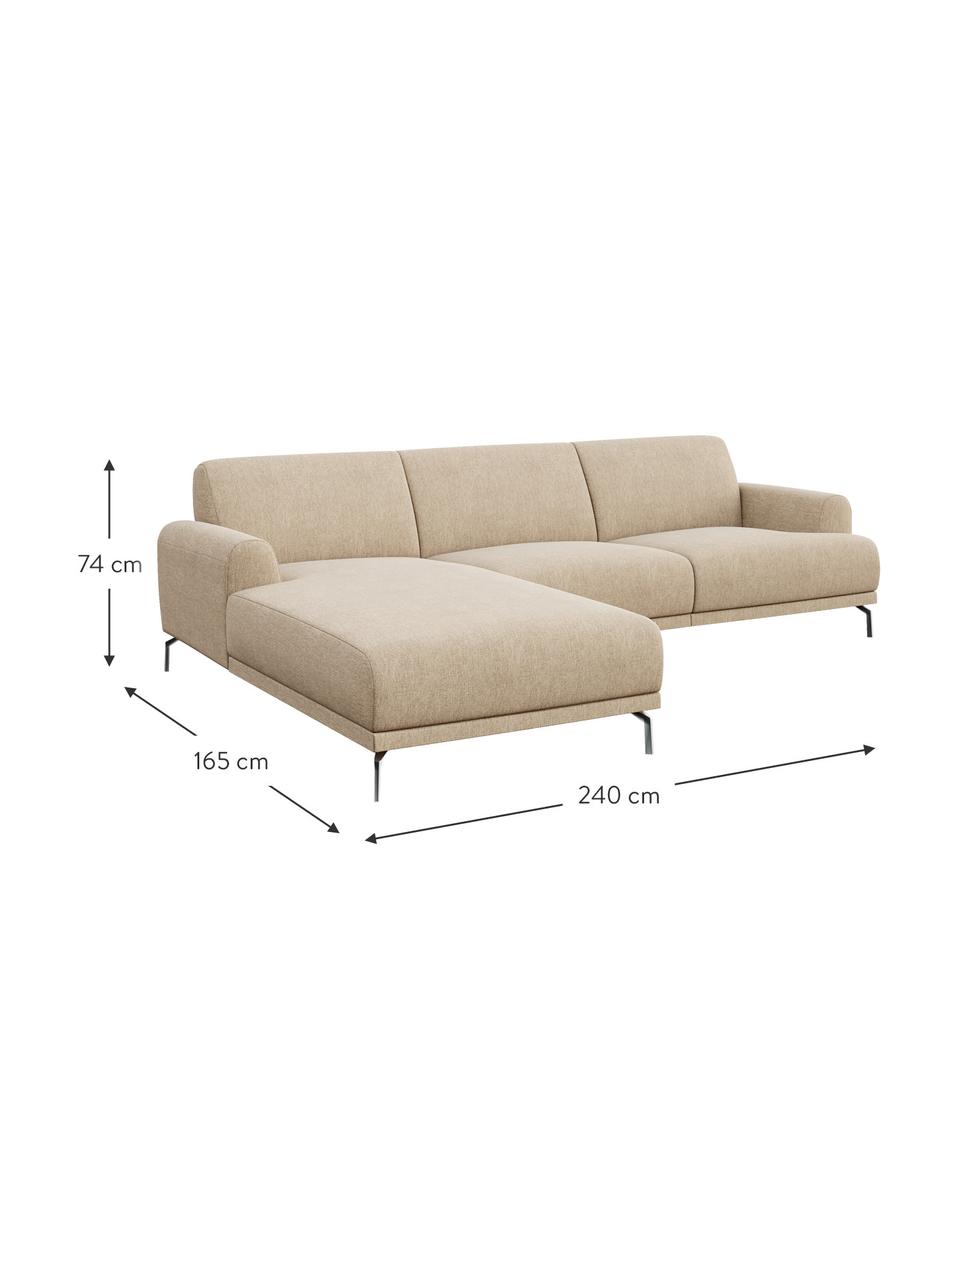 Sofa narożna Puzo, Tapicerka: 100% poliester, Nogi: metal lakierowany, Jasny beżowy, S 240 x G 165 cm